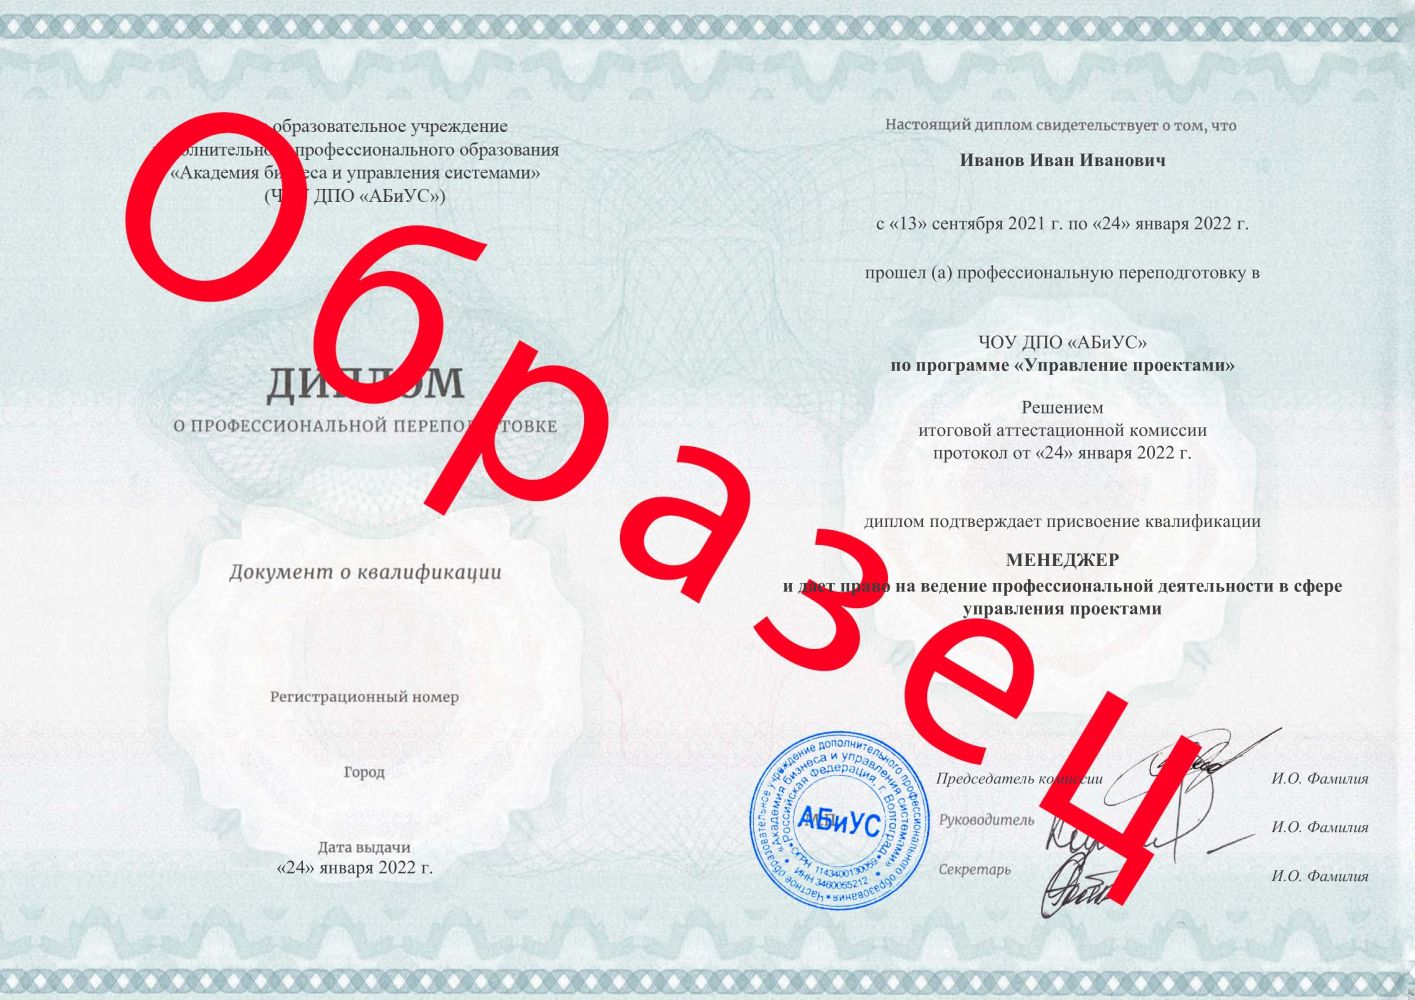 Диплом Управление проектами 510 часов 17267 руб.